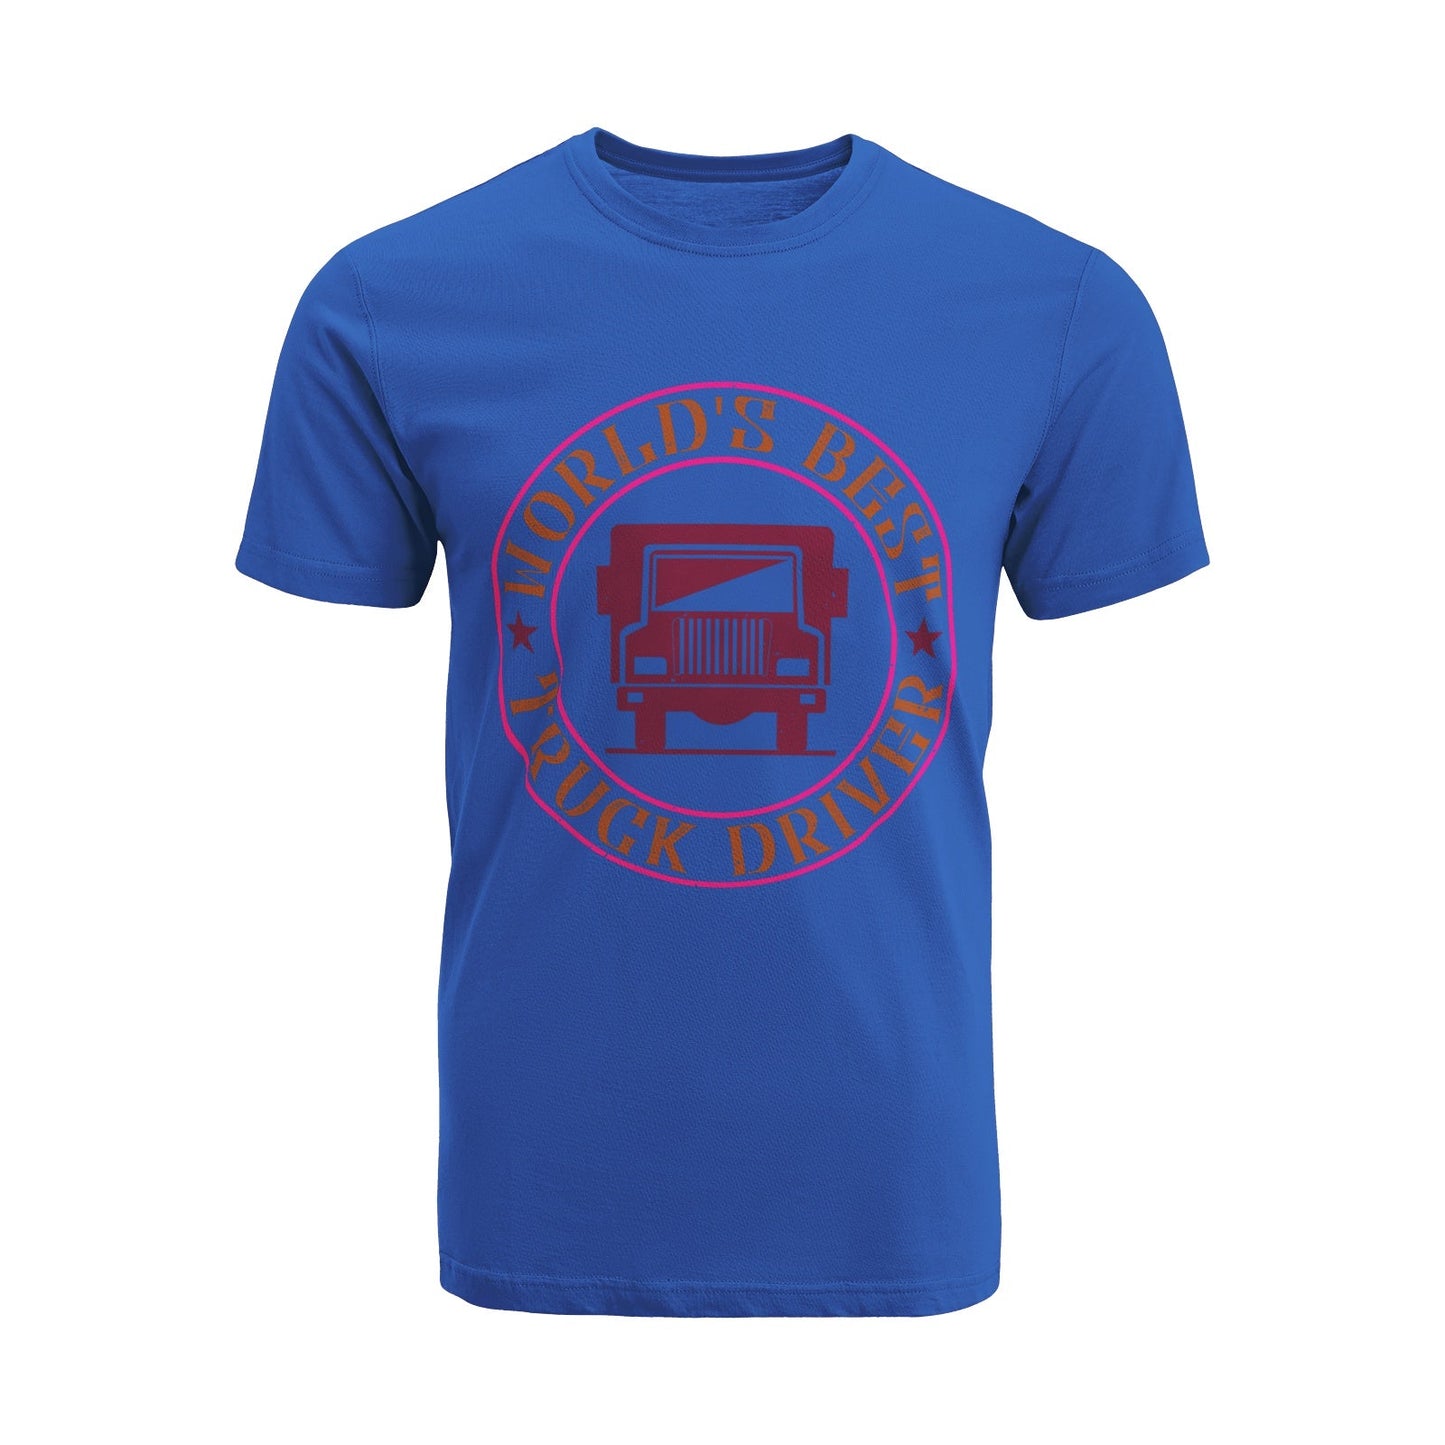 Unisex Short Sleeve Crew Neck Cotton Jersey T-Shirt TRUCK 48